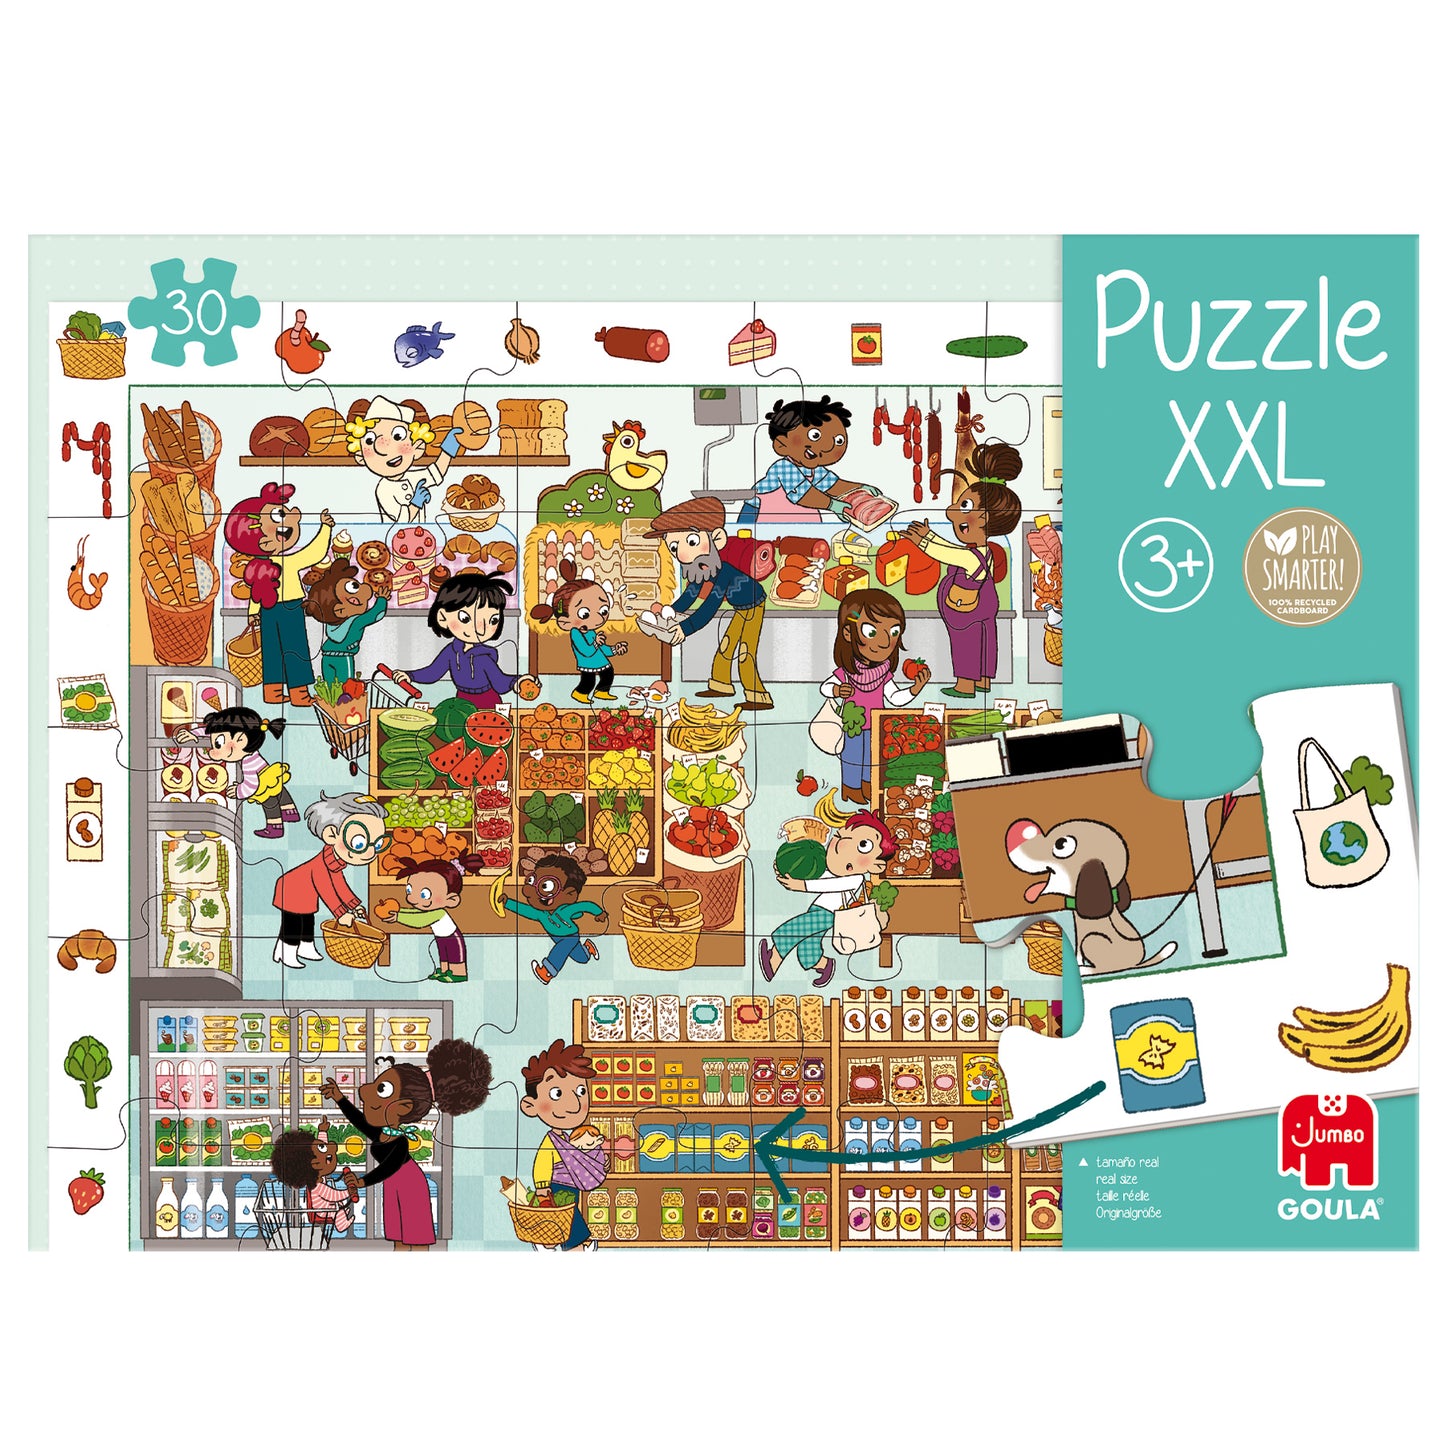 Puzzle xxl market - product image - Jumboplay.com